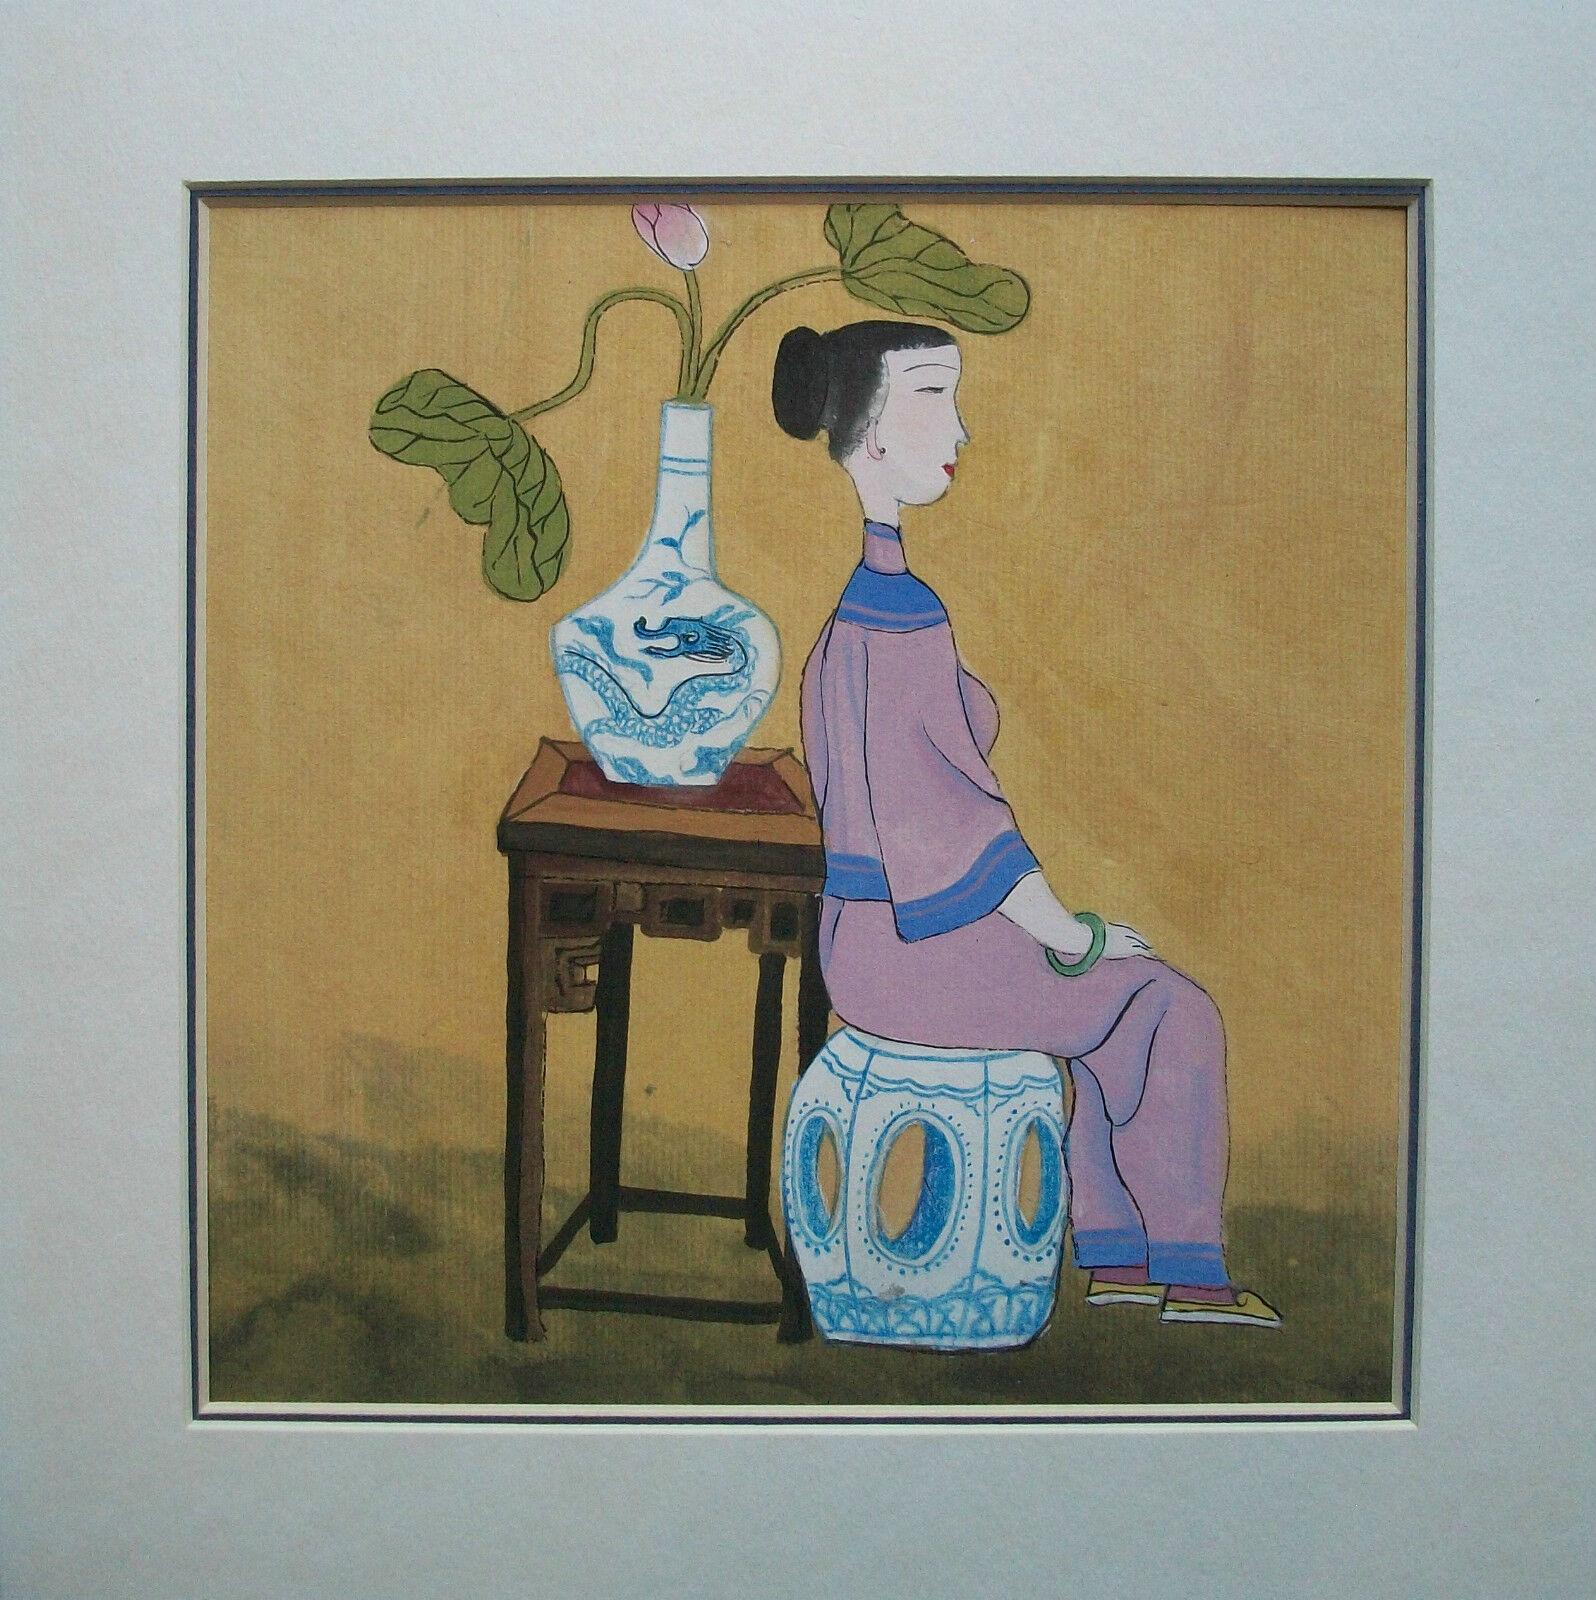 Vintage Gouache-Gemälde auf Papier - gute Qualität und Komposition - mit Klebeband auf eine zweifarbige/doppelt abgeschrägte matte Platte montiert - unsigniert - China - Ende 20. Jahrhundert.

Ausgezeichneter Vintage-Zustand - kein Verlust - keine